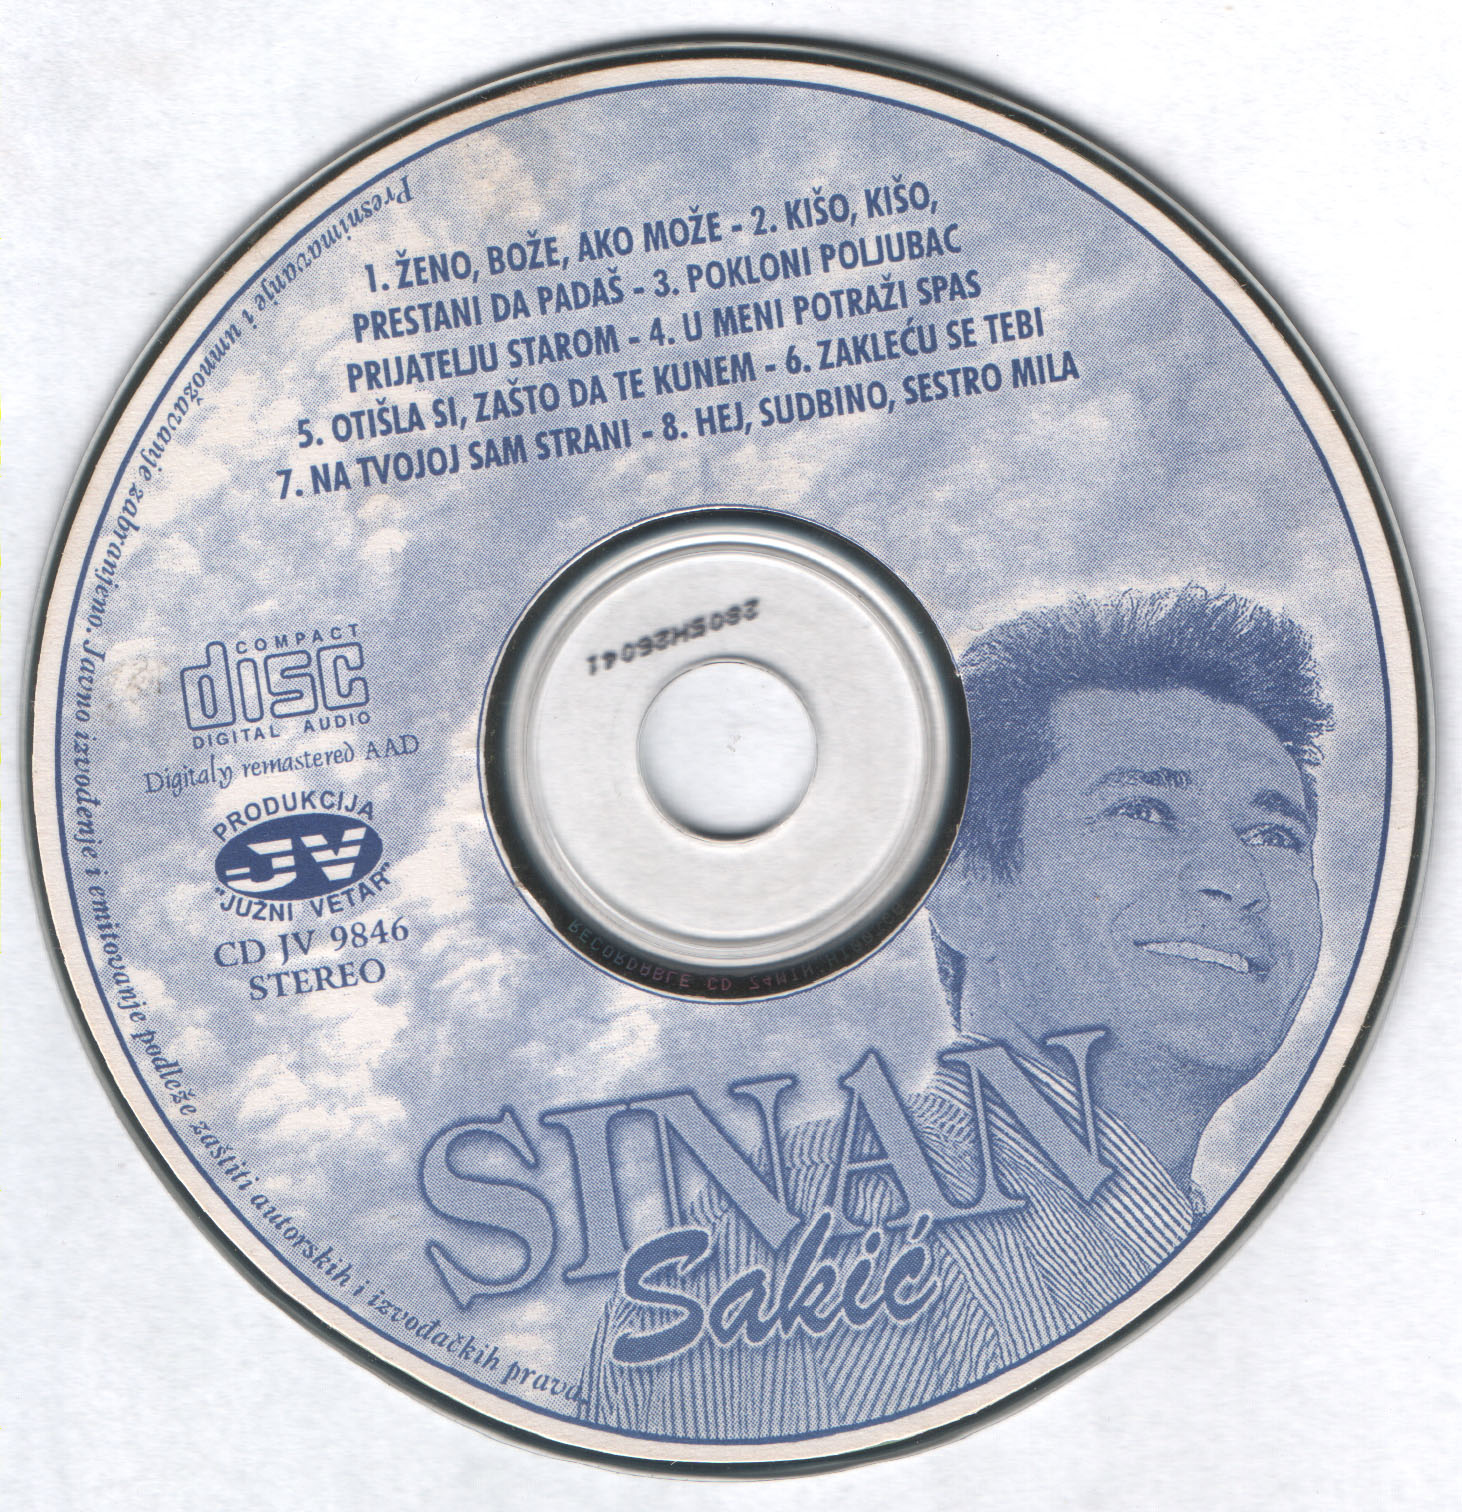 Sinan Sakic 1994 Cd